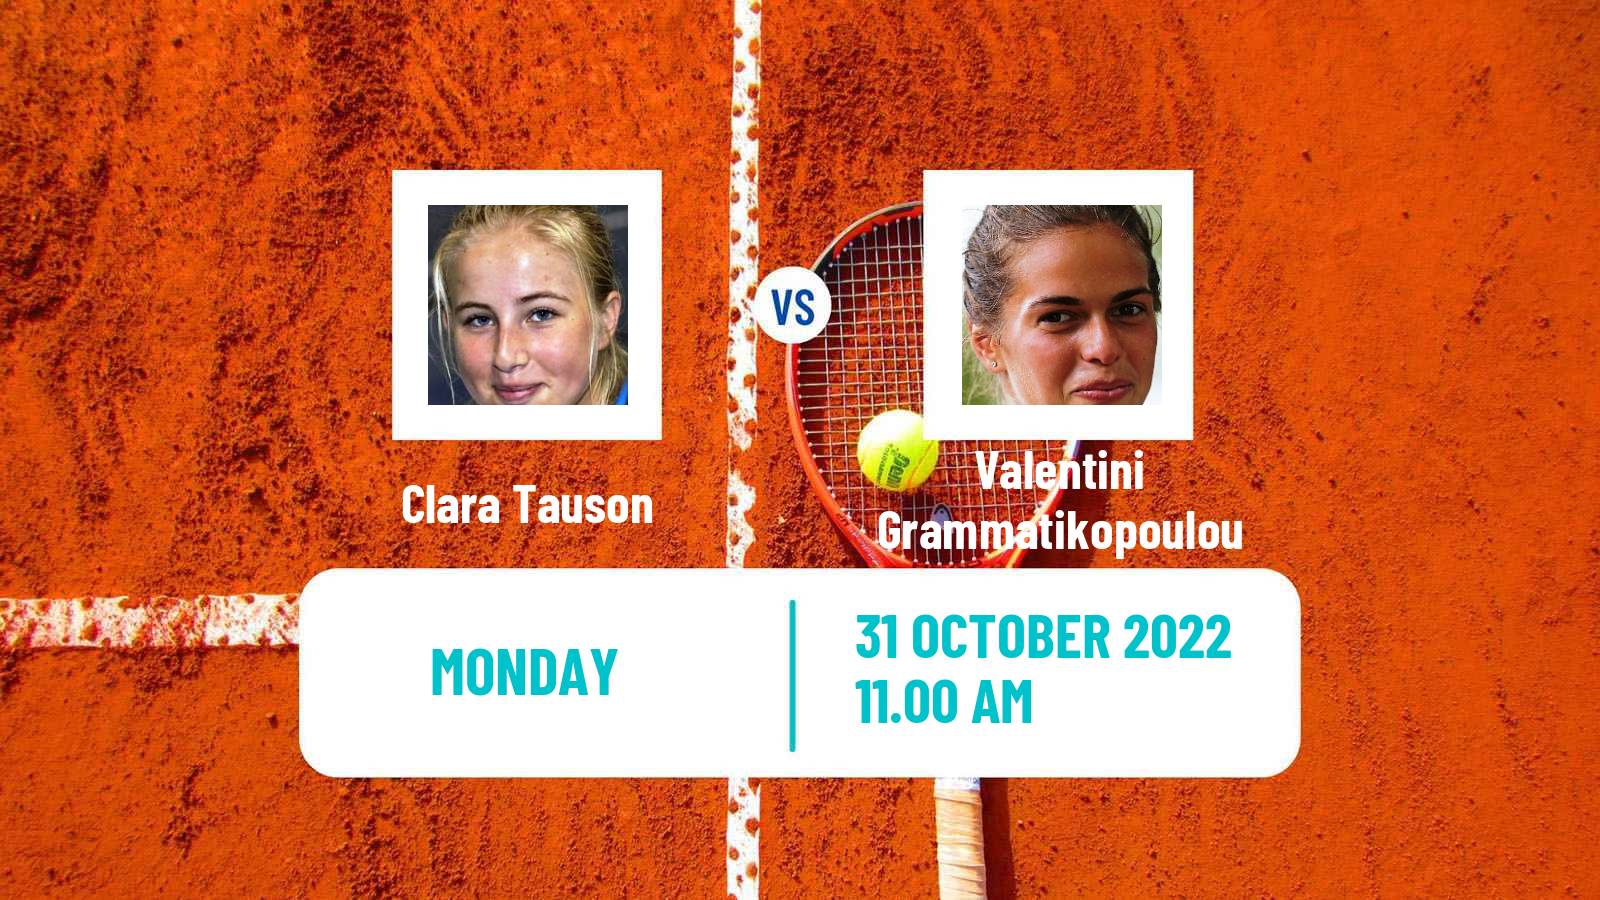 Tennis ITF Tournaments Clara Tauson - Valentini Grammatikopoulou